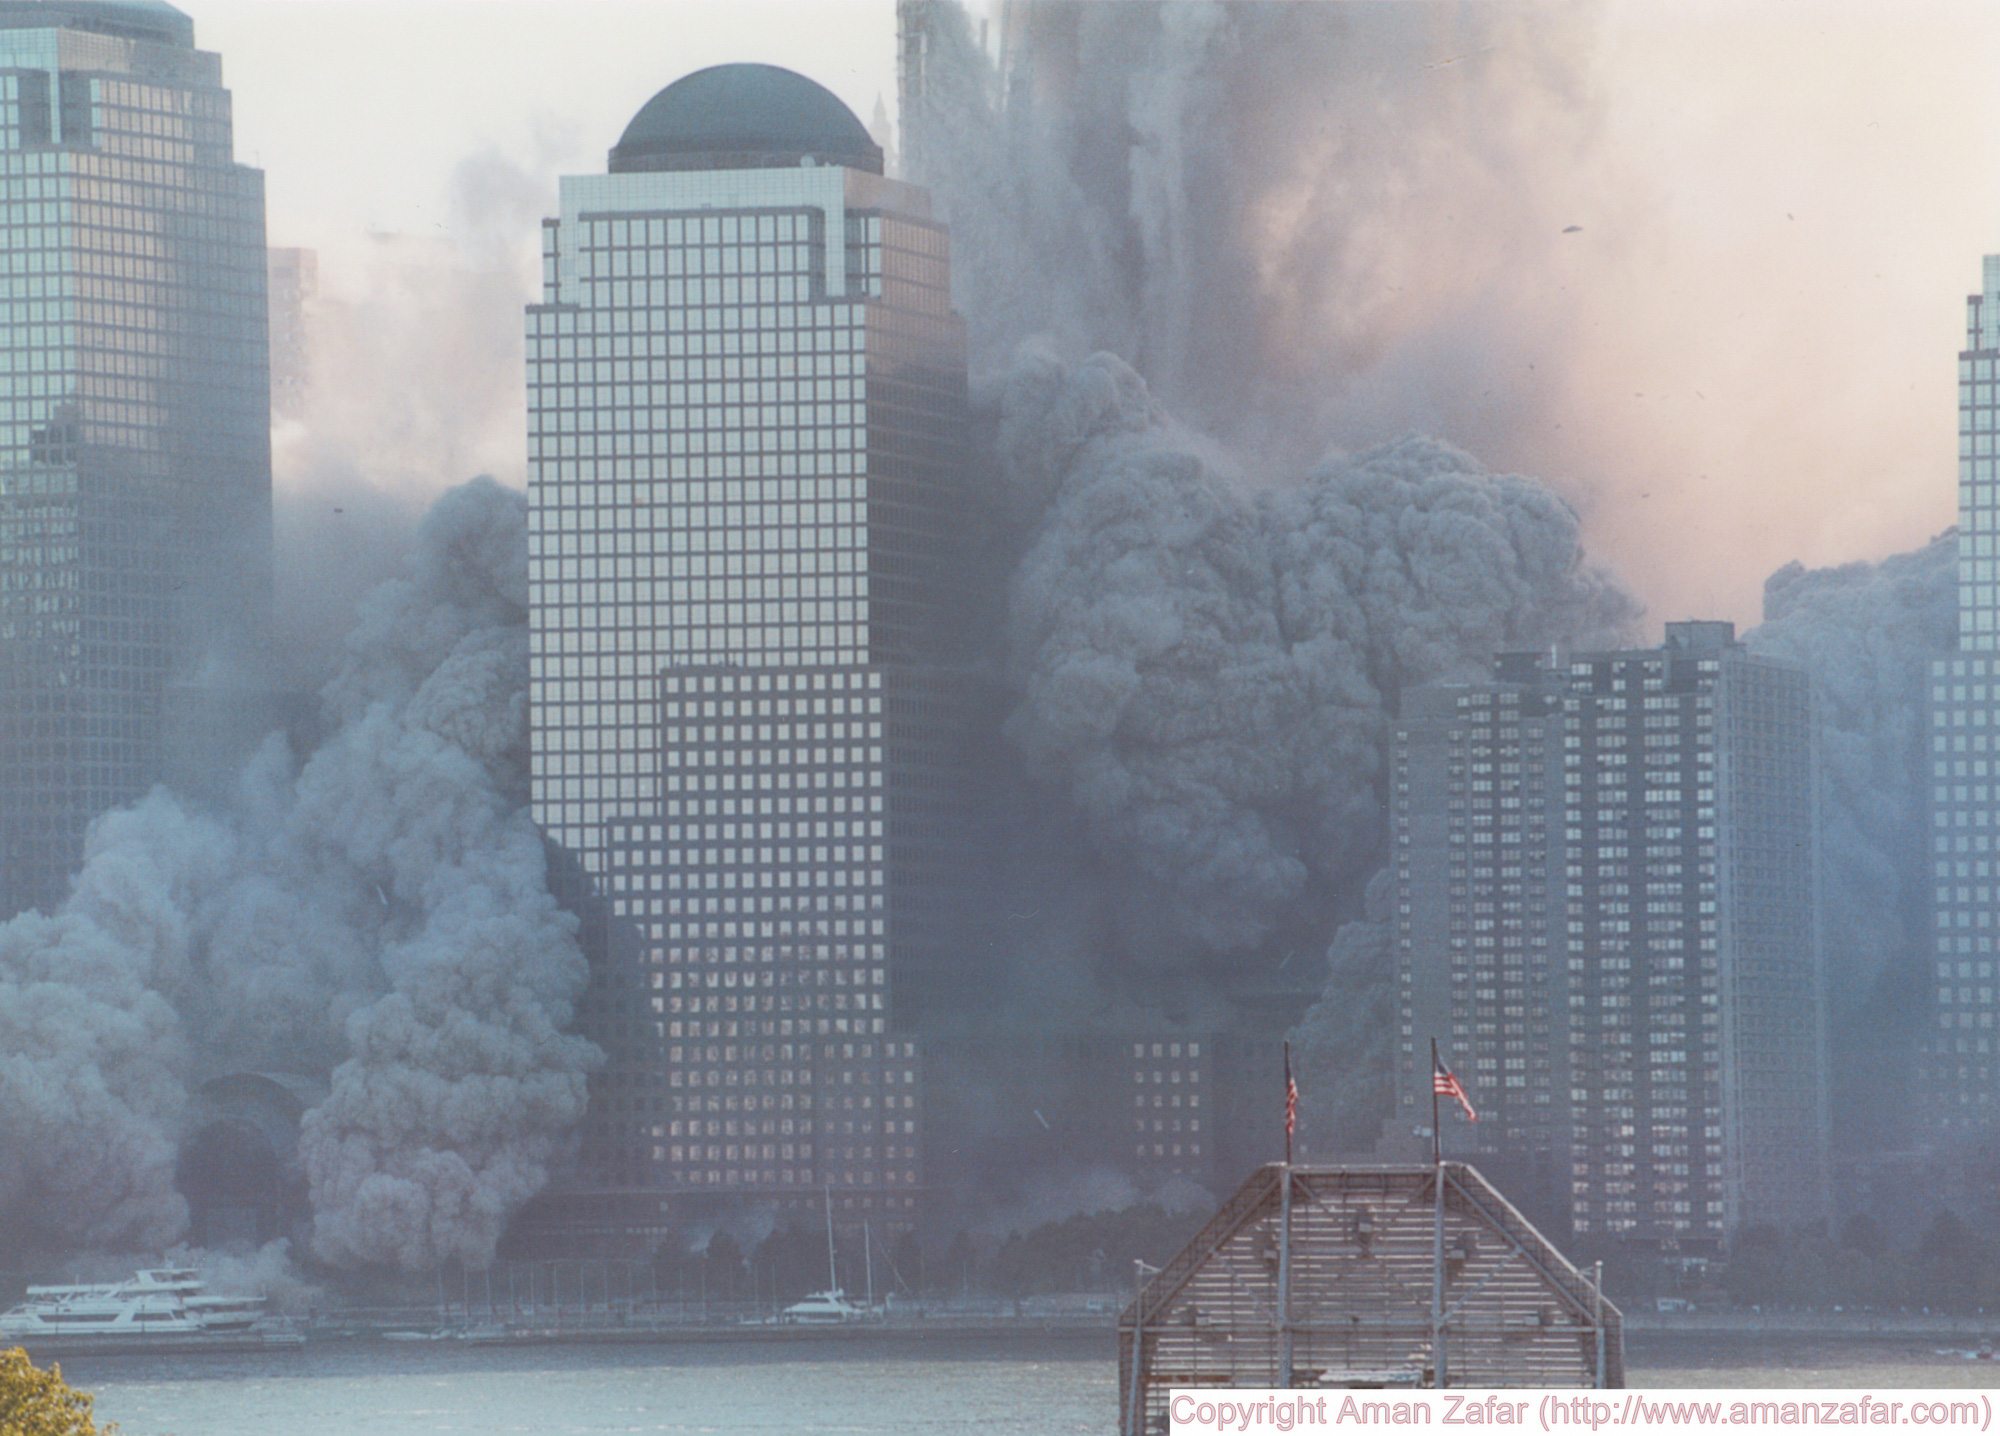 Khoảnh khắc yên bình của Trung tâm Thương mại Thế giới trước vụ khủng bố 11/9 nằm lại trong ký ức của người Mỹ - Ảnh 22.